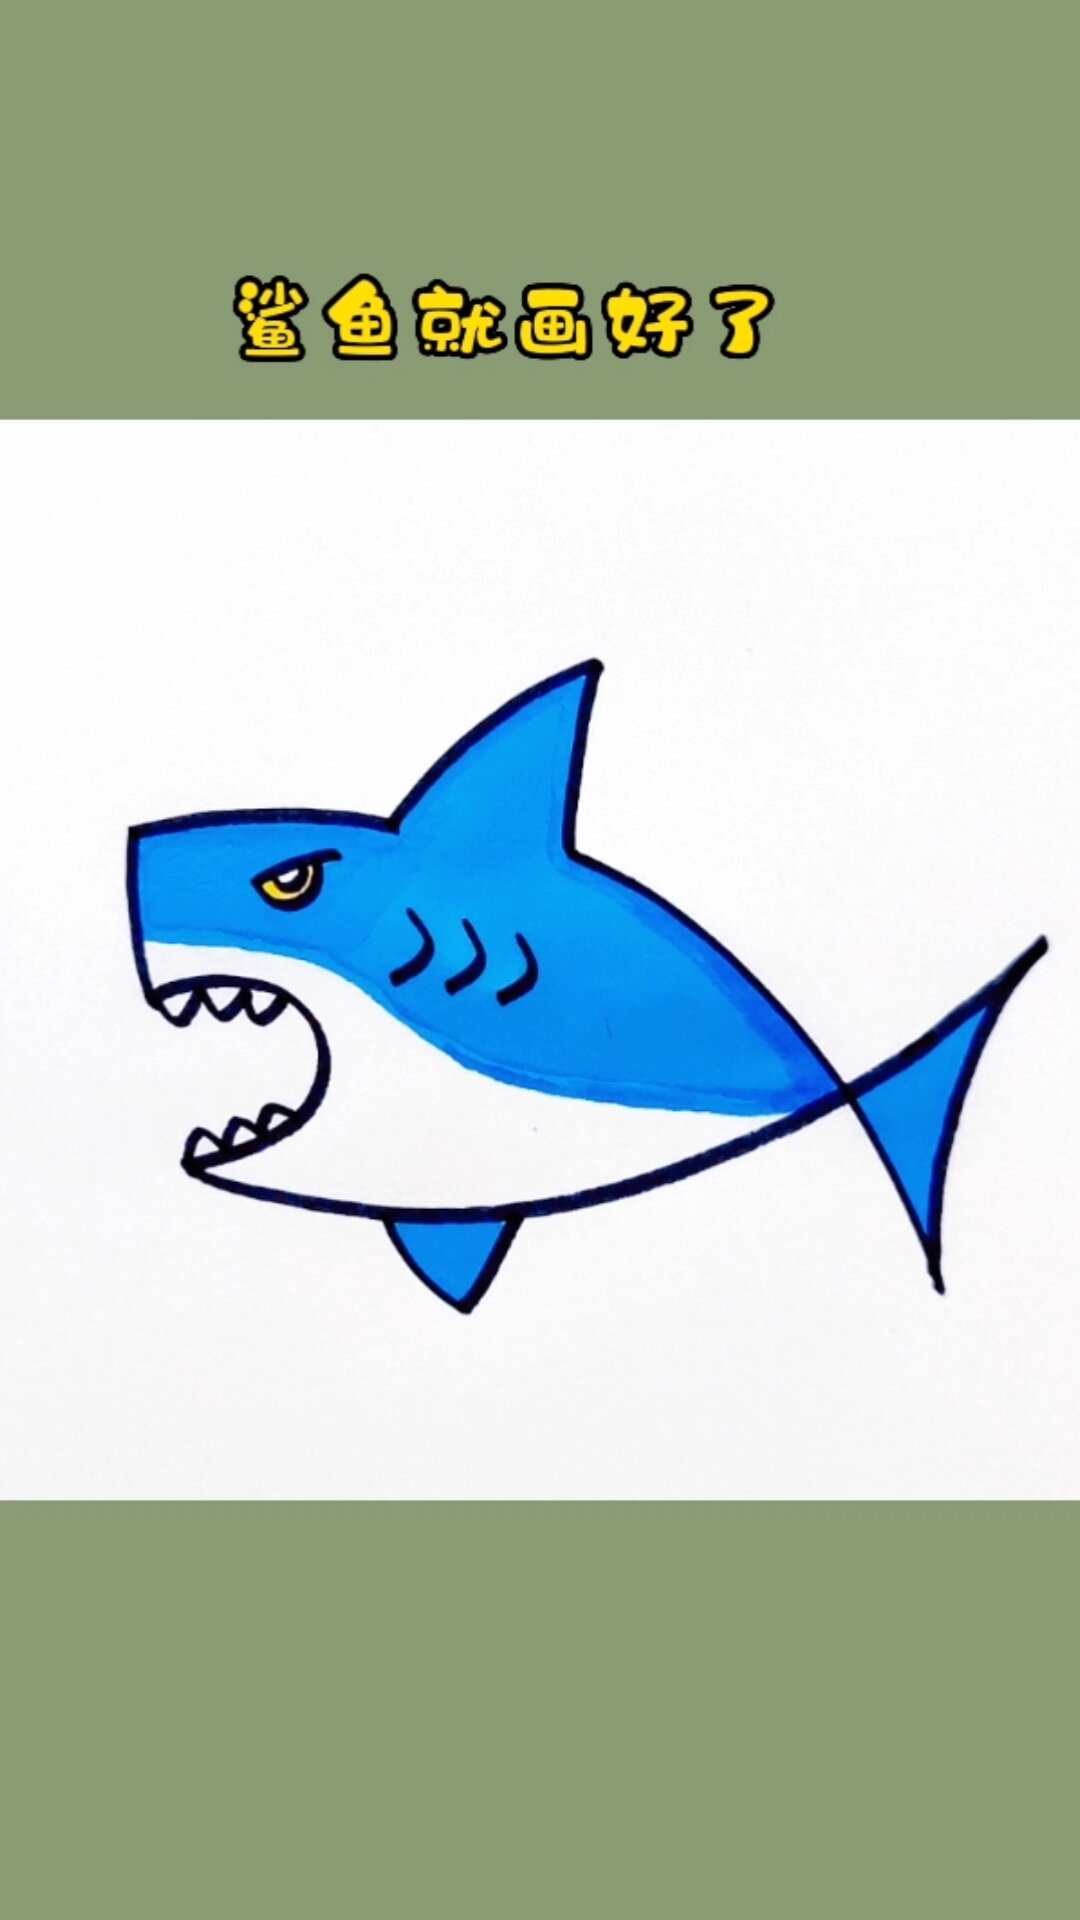 大鲨鱼图片简笔画彩色图片